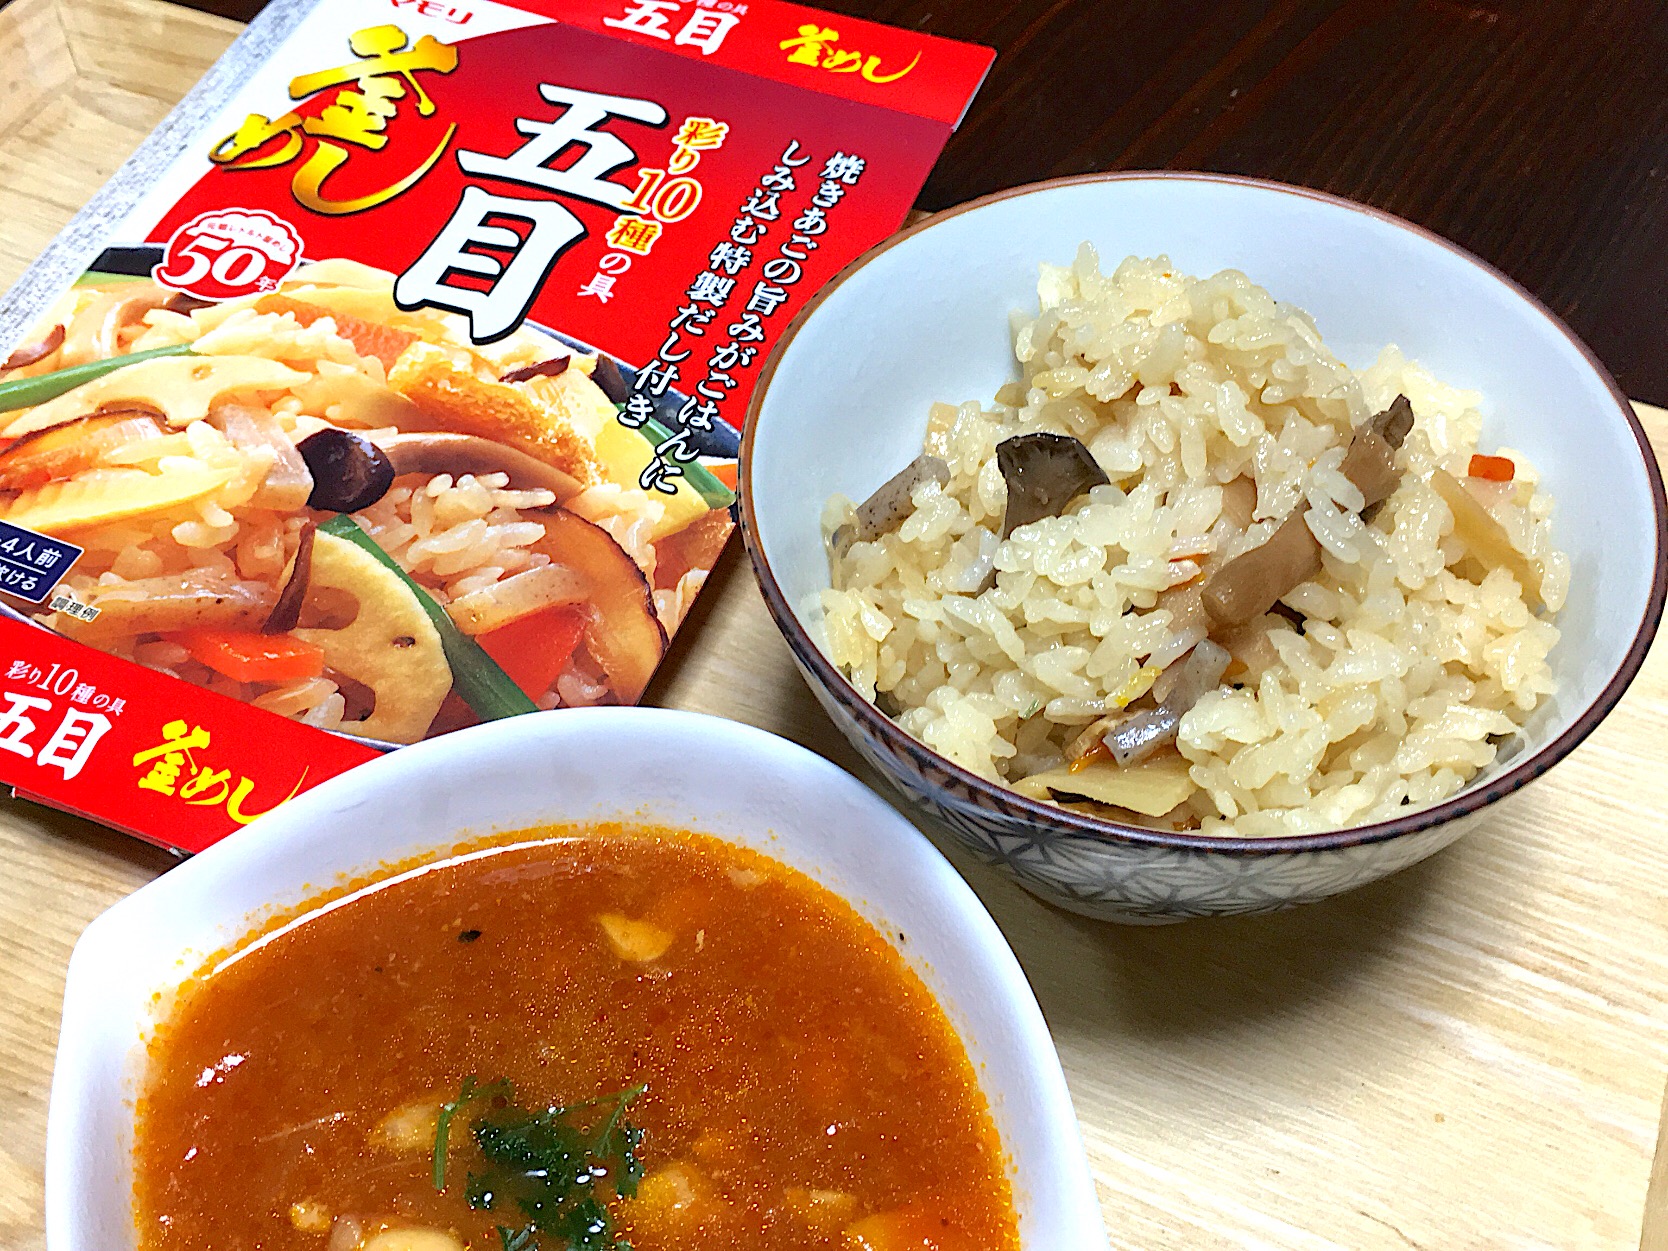 ヤマモリ彩り10種の具 五目釜めしの素
と意外とぴったりトマト煮込みスープ?